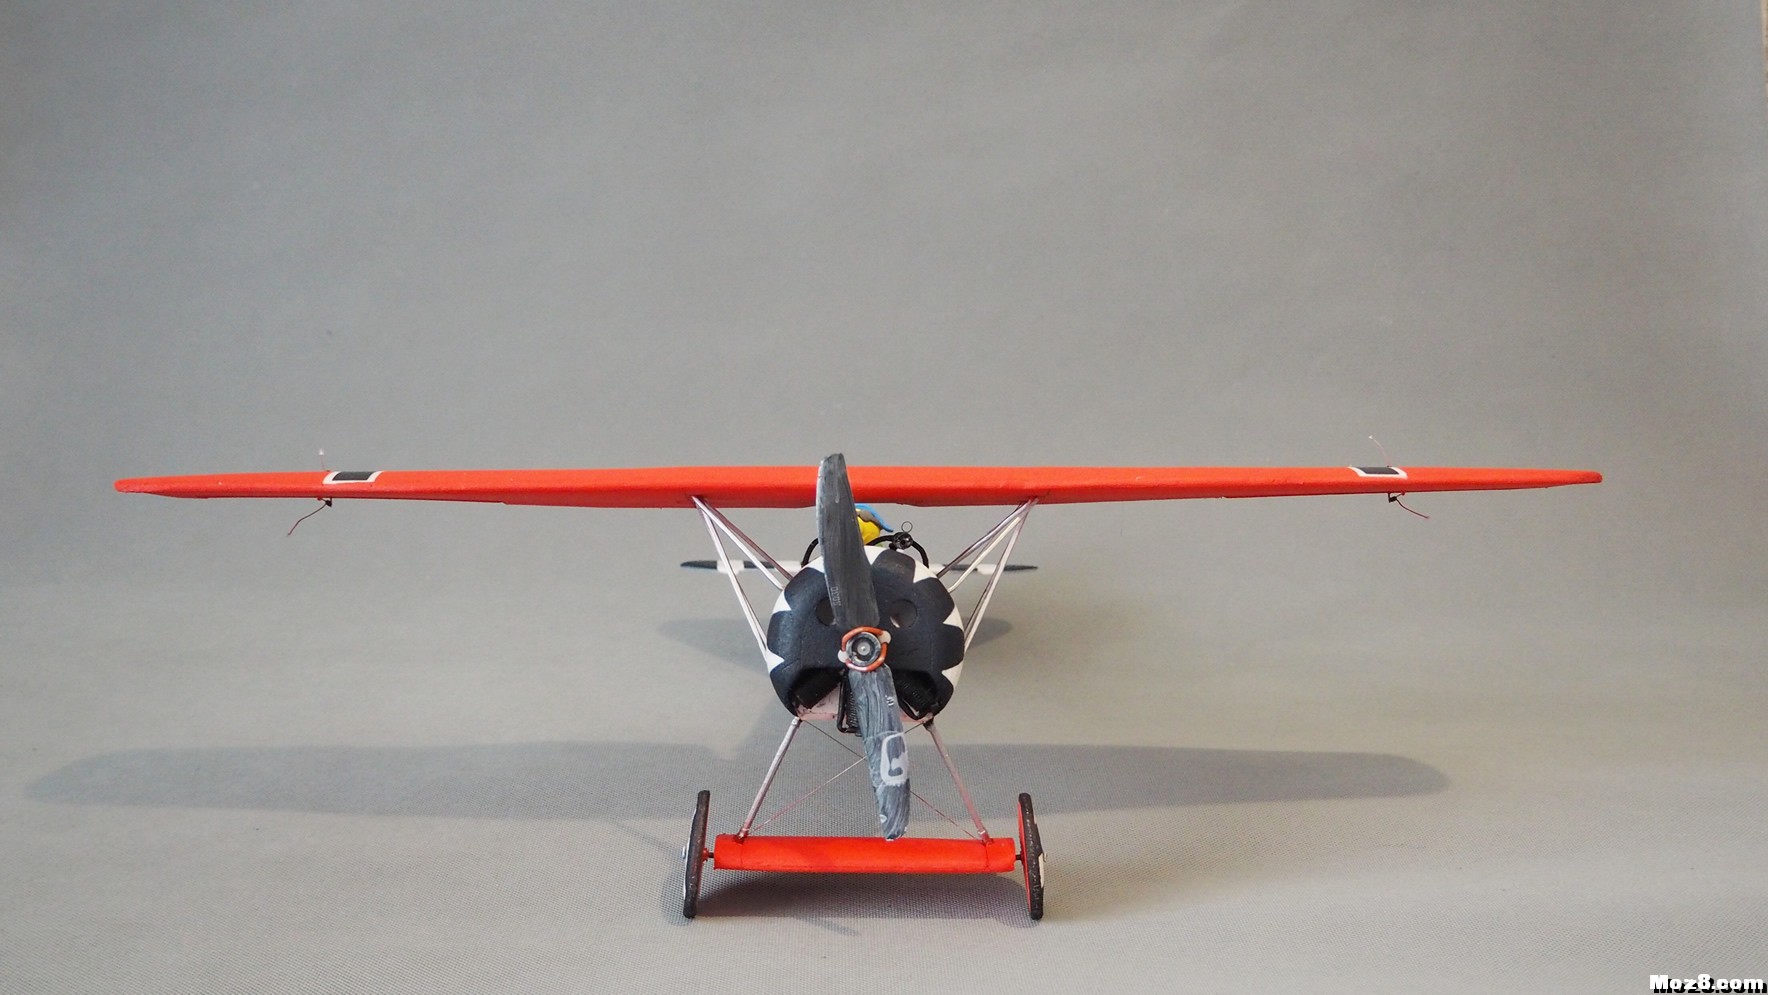 【爱因制造】迷你Fokker D-VIII战机 舵机,接收机,空心杯,bilibili,视频 作者:xbnlkdbxl 6715 